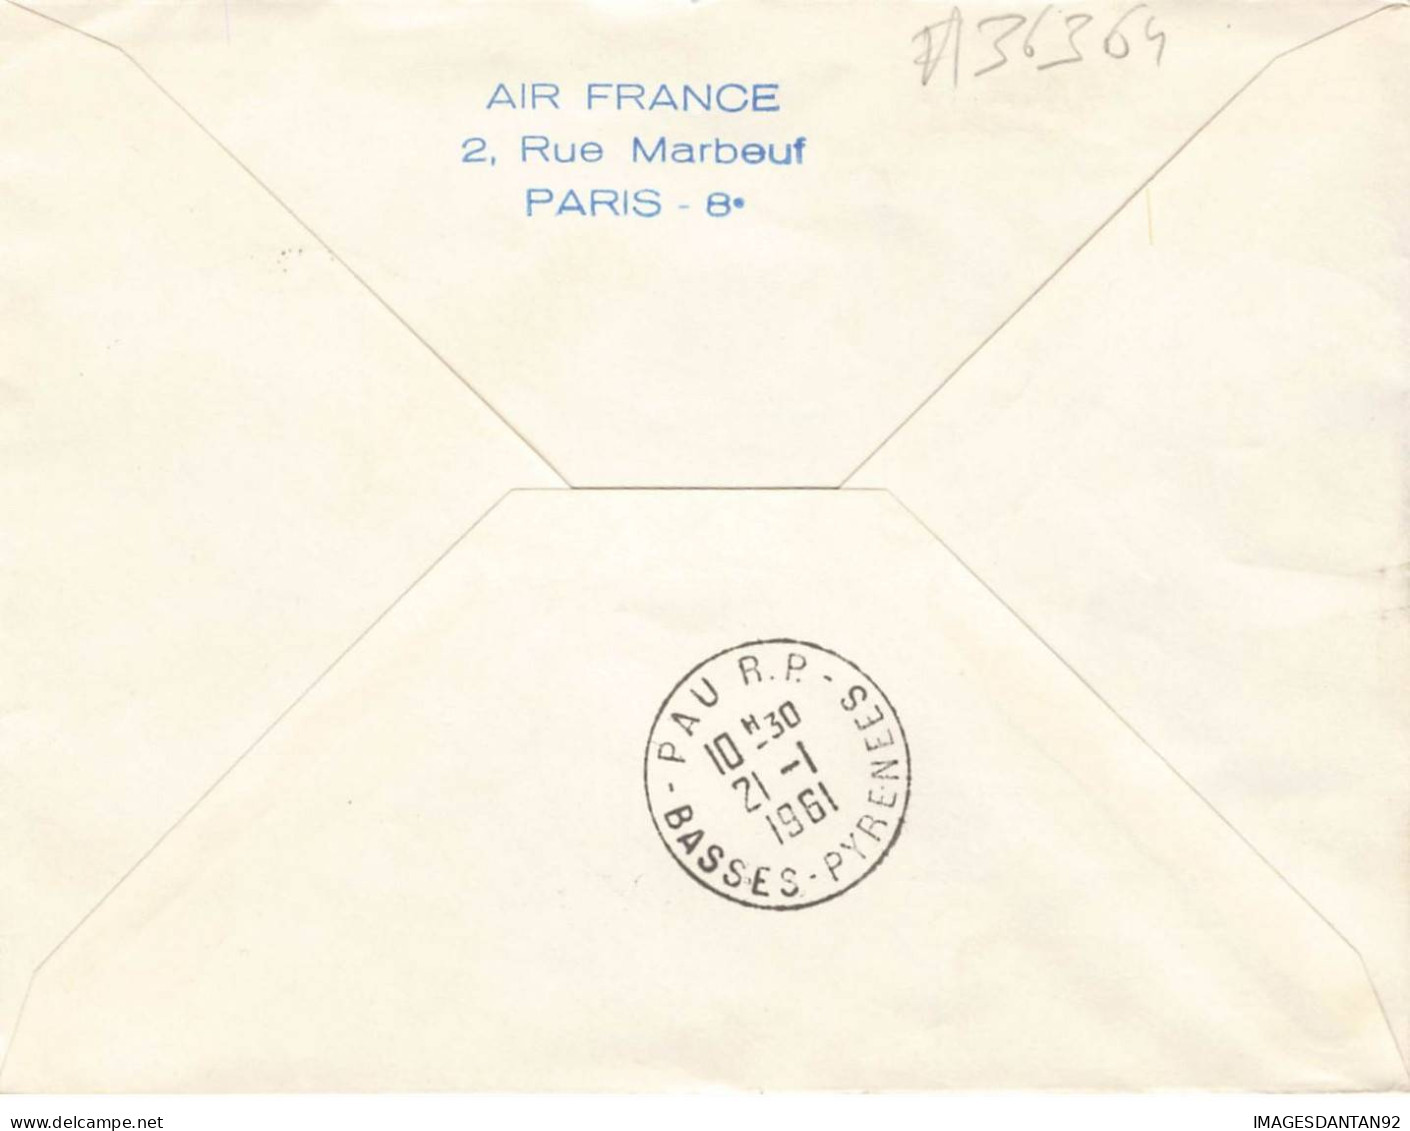 FRANCE #36364 15 EME ANNIVERSAIRE AVIATION POSTALE DE NUIT 1961 PARIS PAU - Covers & Documents